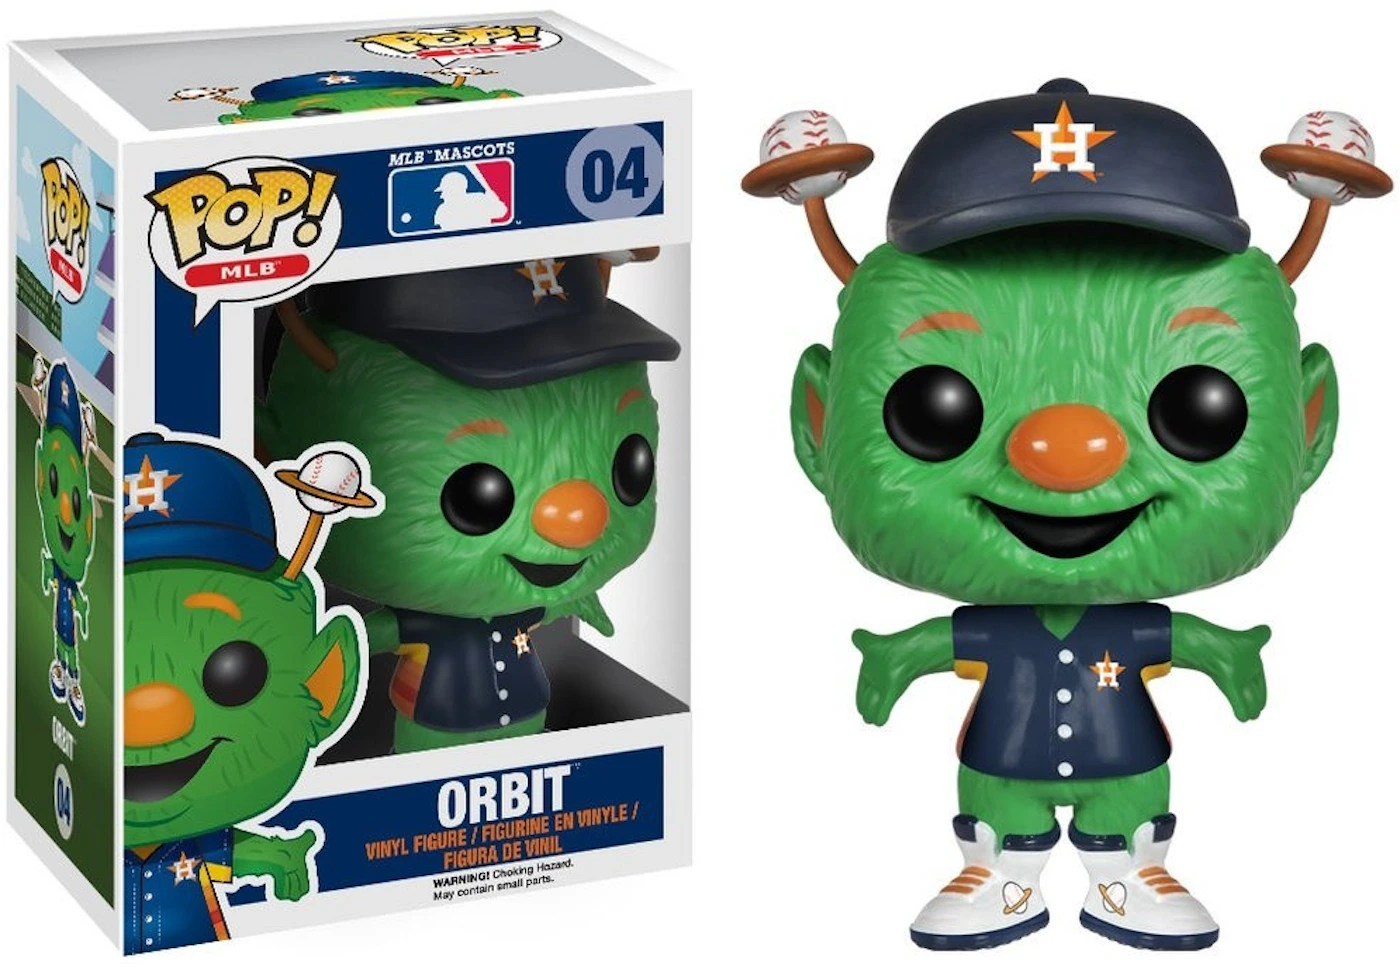 Funko Pop! Sports MLB Mascots Orbit Figure #04 - US